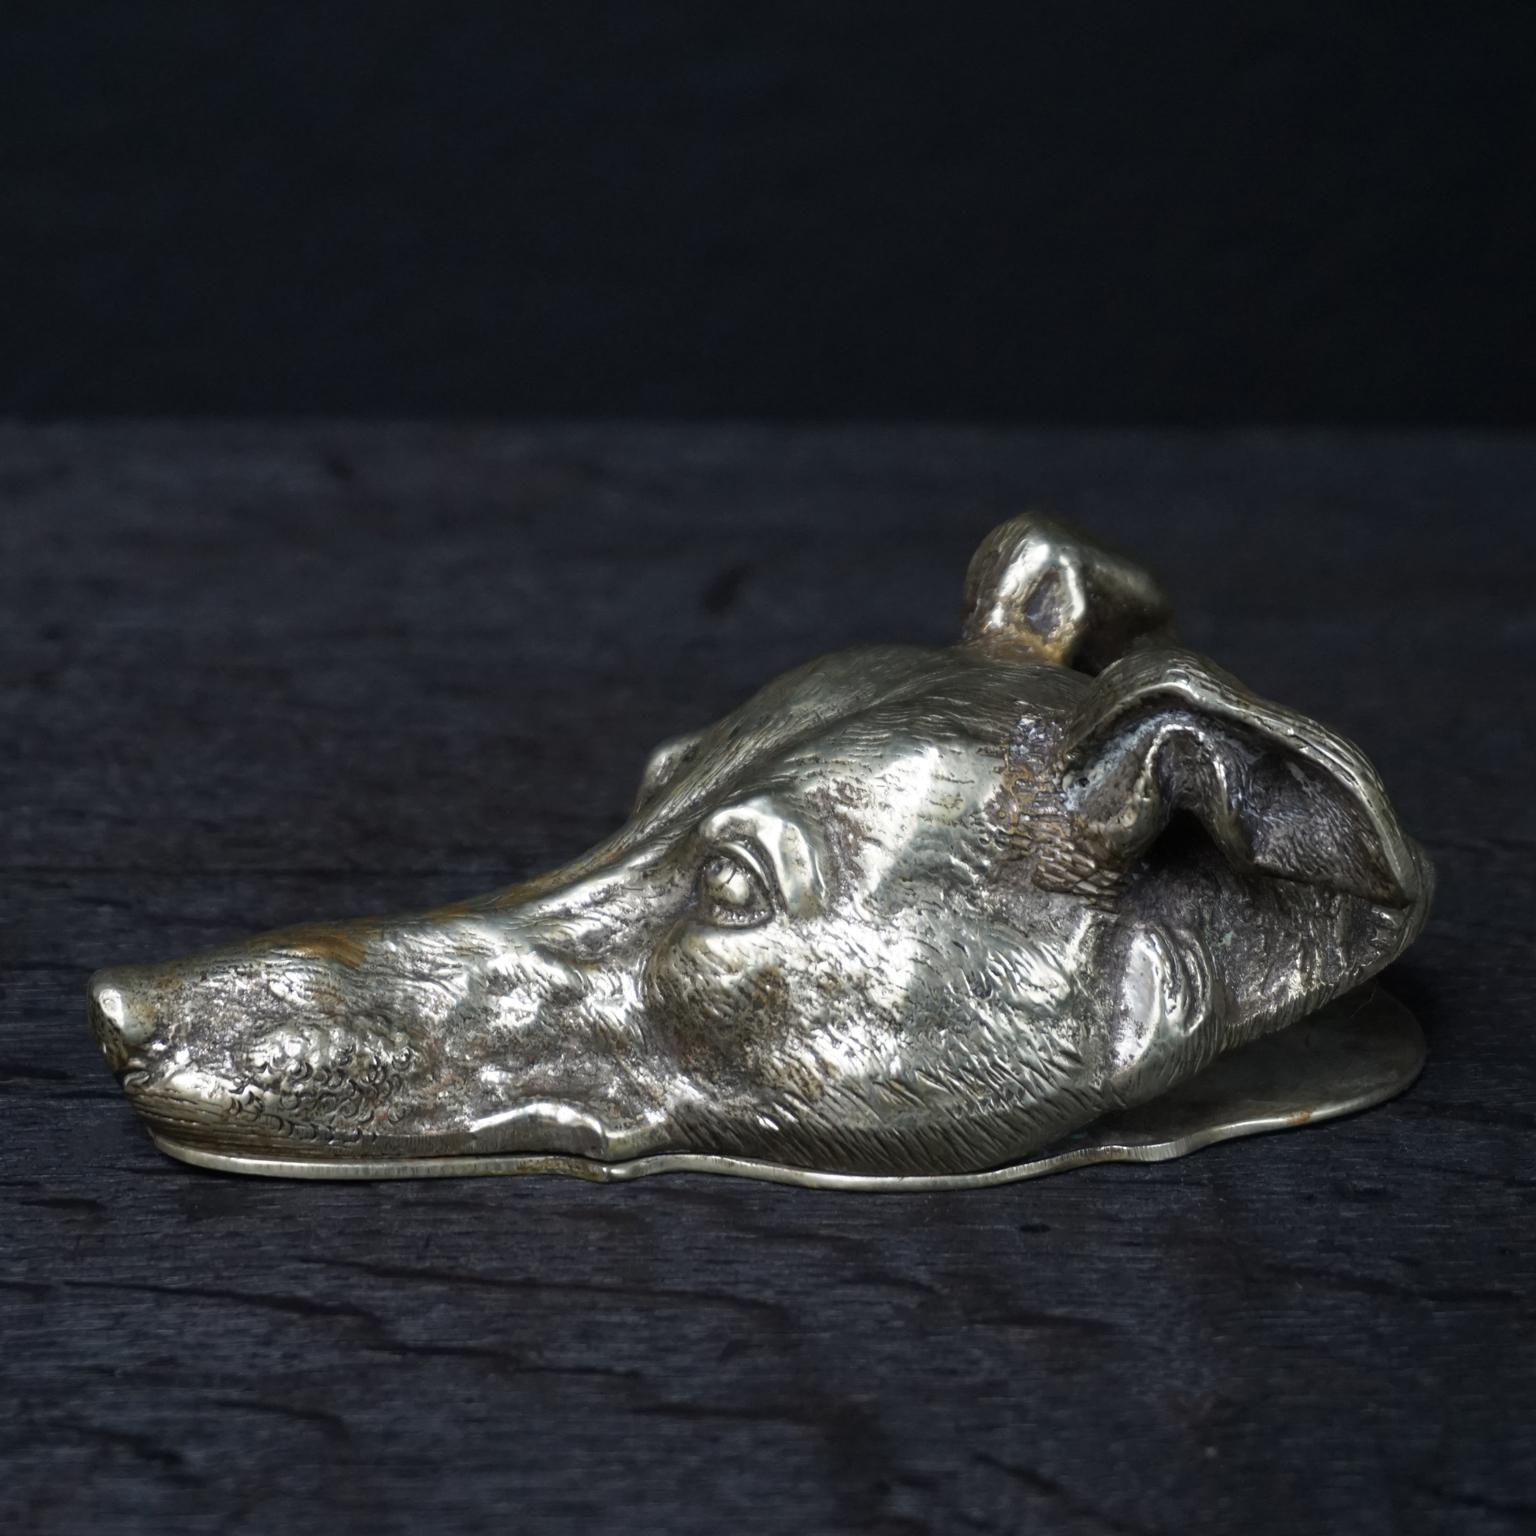 Wunderbare österreichische Wien massiv gegossen Bronze figuralen Hundekopf eines Greyhound oder Whippet Hund mit Halsband aus den späten 1800er:: frühen 1900er
Diese schwere Bronze niedlichen Hund kann auch als Briefbeschwerer verwendet werden.